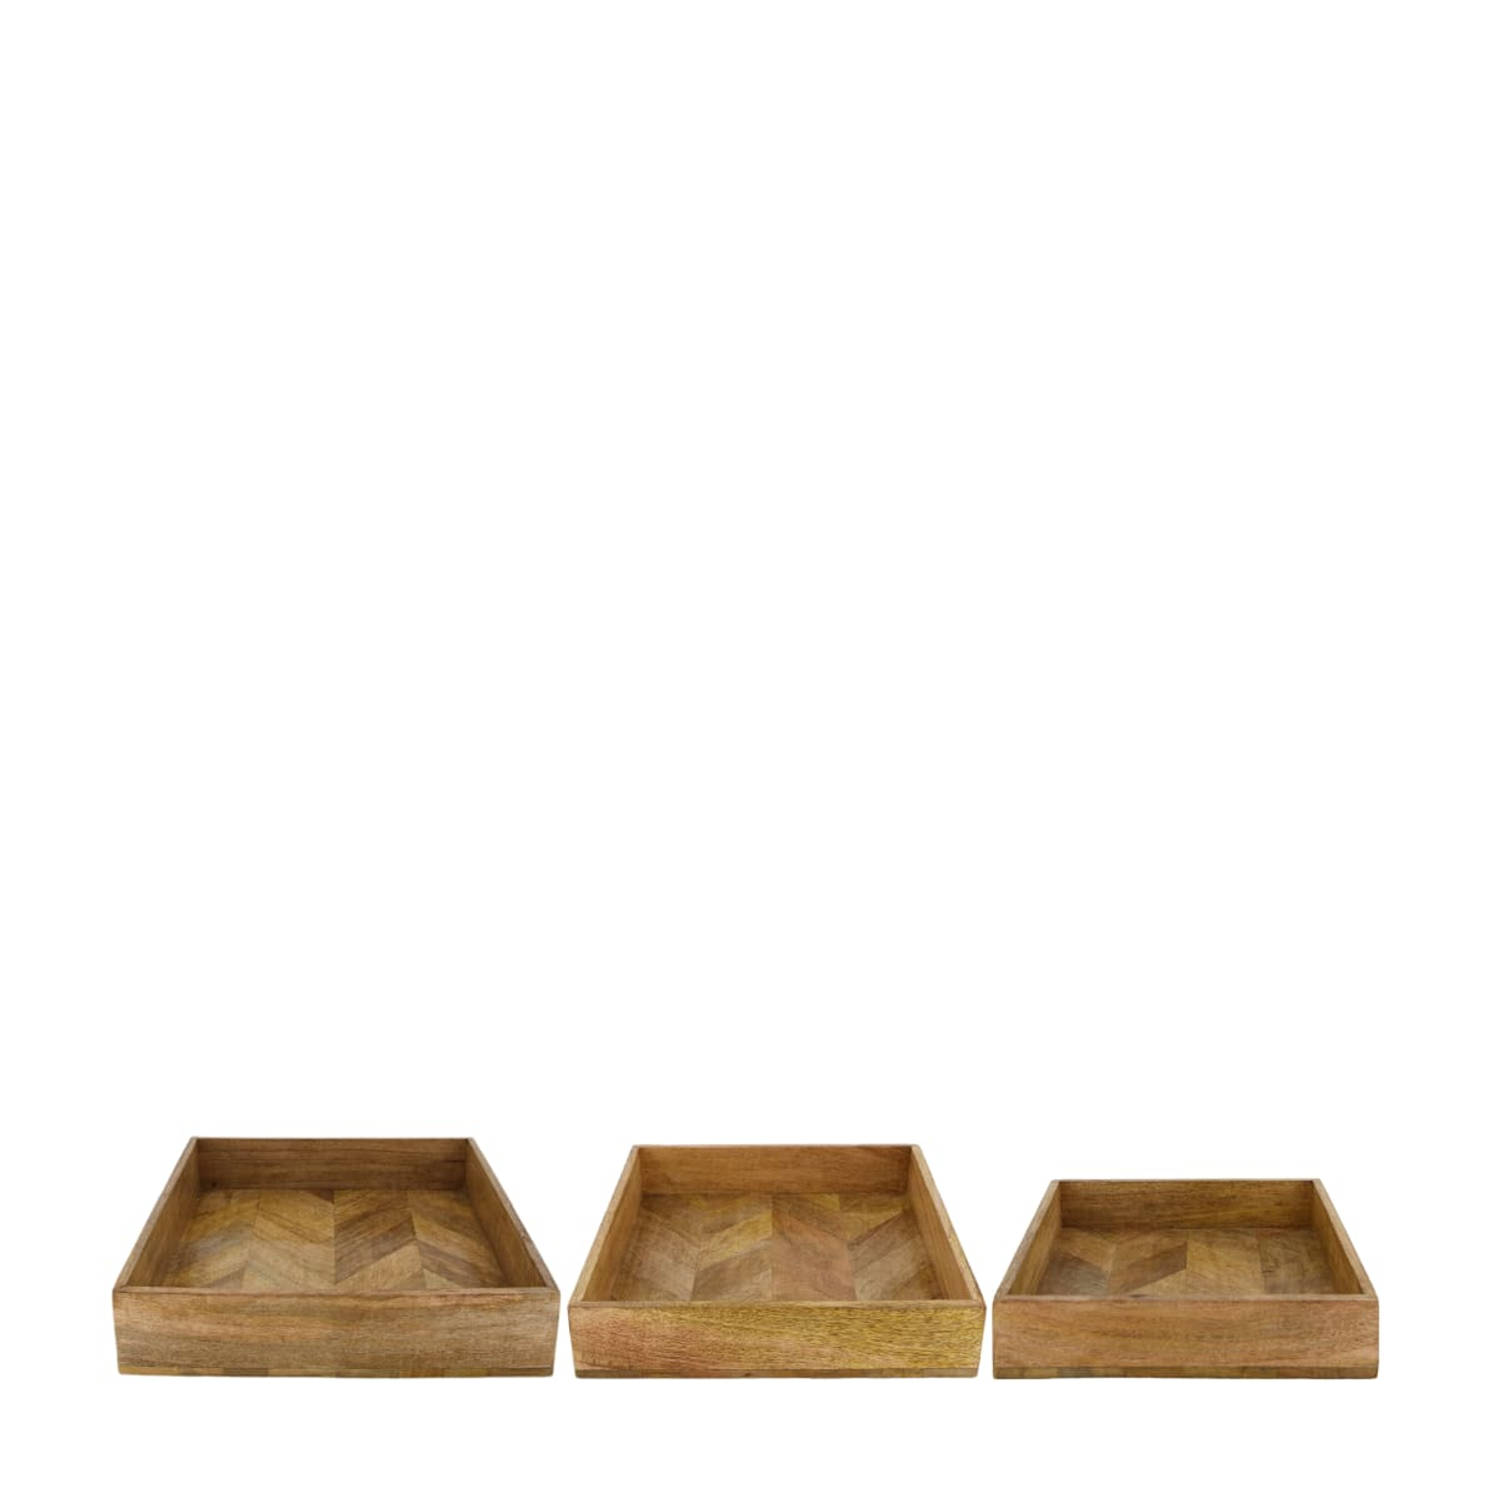 DKNC Dienblad mango hout 37x37x8 cm Set van 3 Natuurlijk